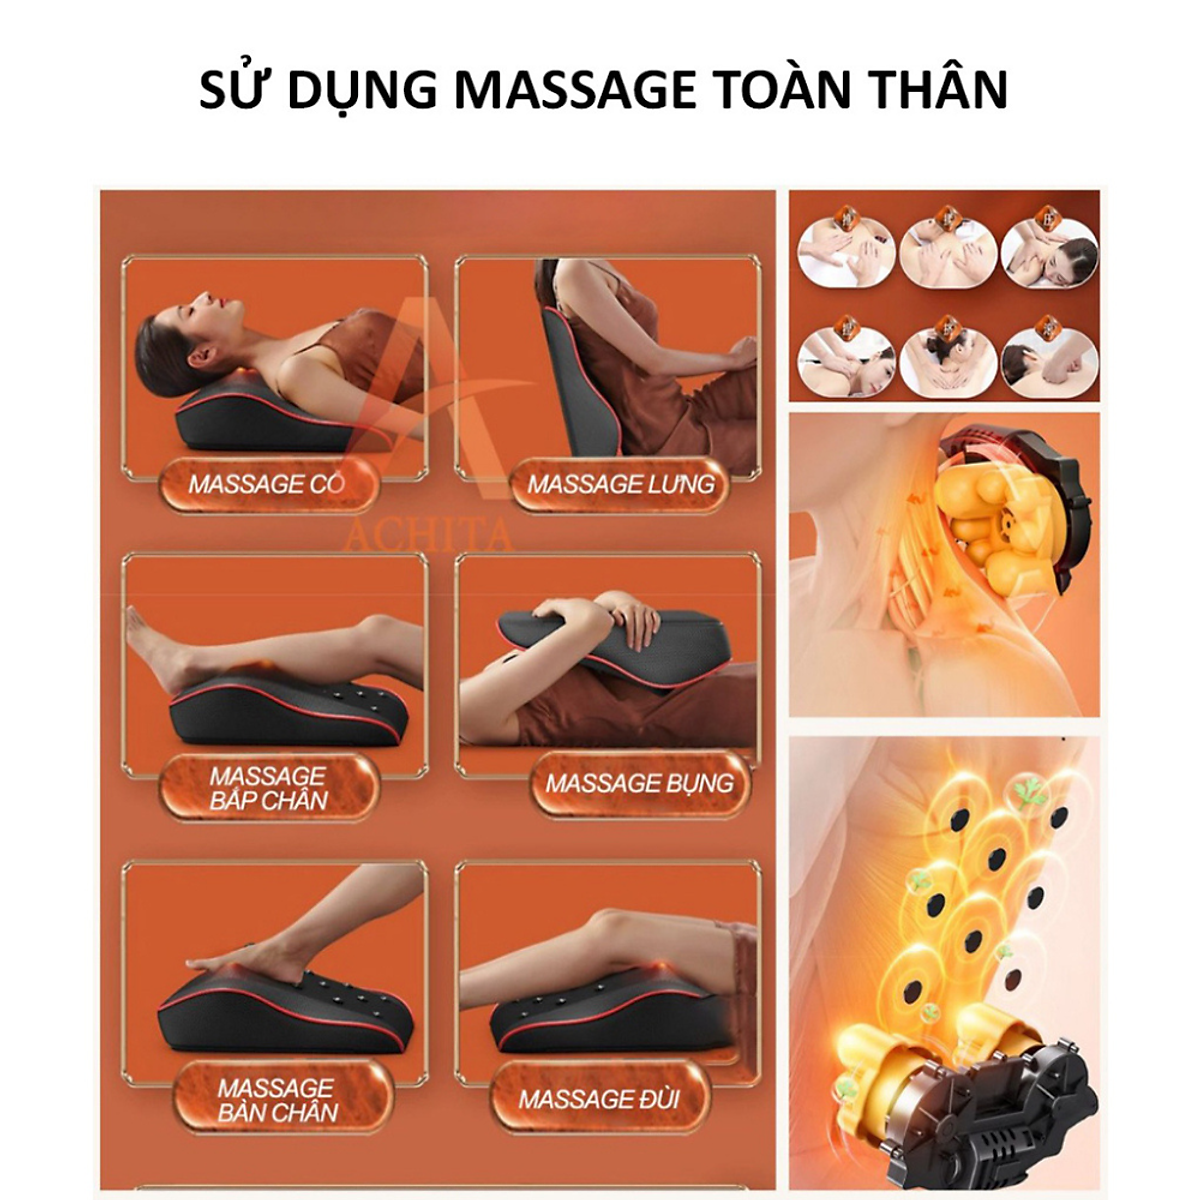 Gối Massage Cổ Vai Gáy, Máy Massage Hồng Ngoại Megou Thế Hệ Mới Cao Cấp, Hỗ Trợ Giảm Nhức Mỏi Toàn Thân Hiệu Quả - Hàng nhập khẩu